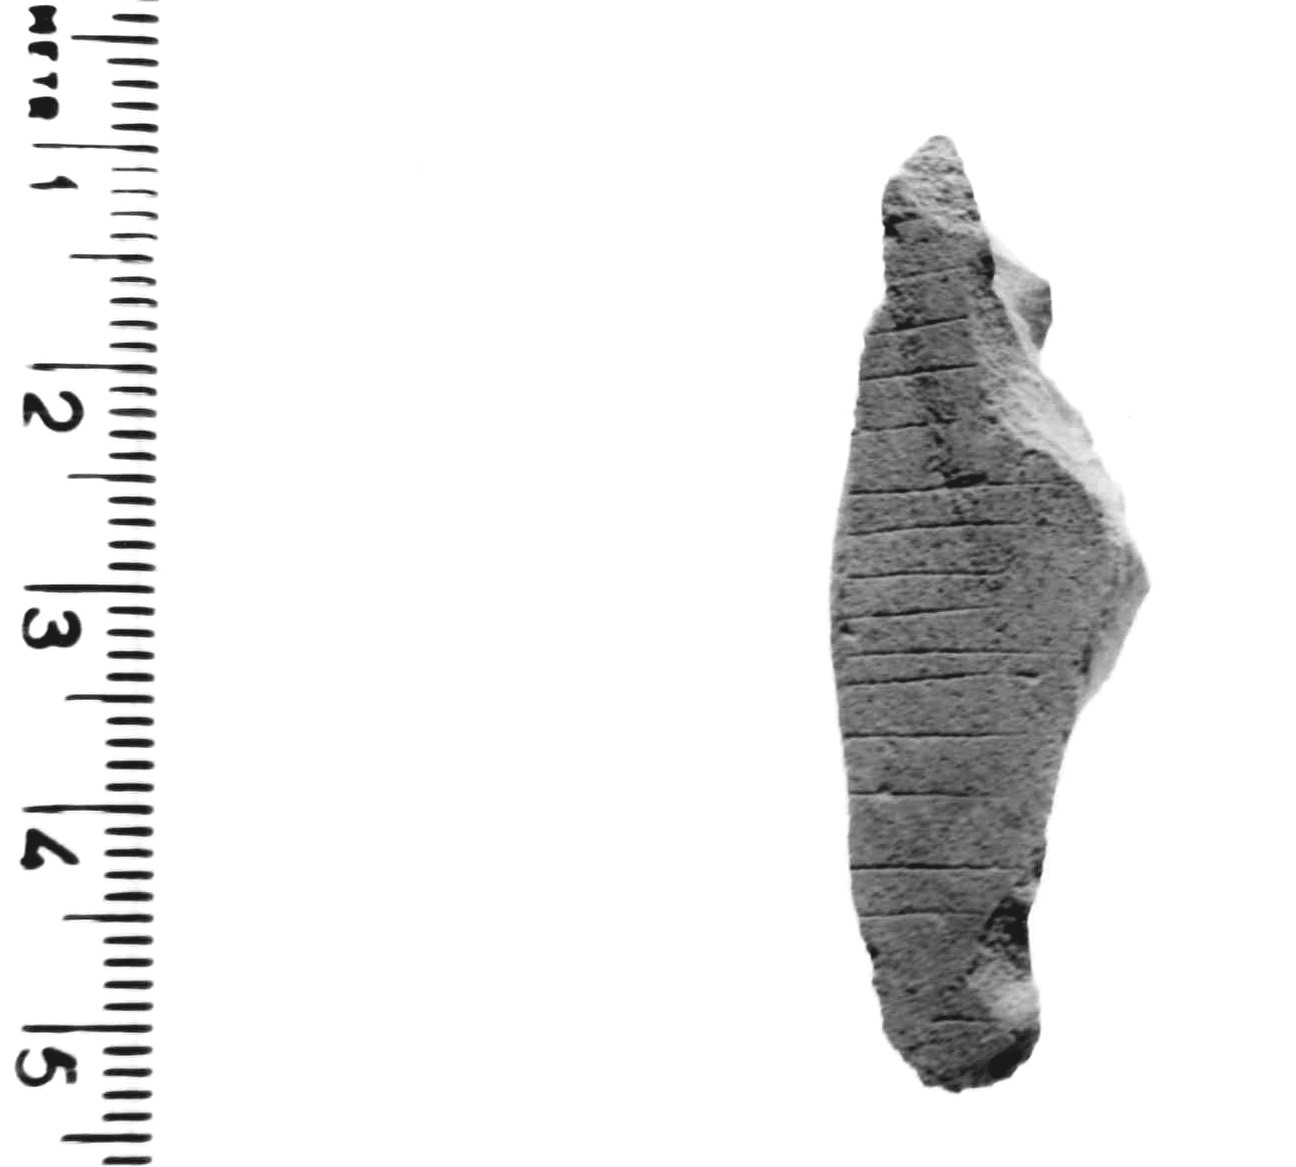 scheggia - epigravettiano antico (paleolitico superiore)